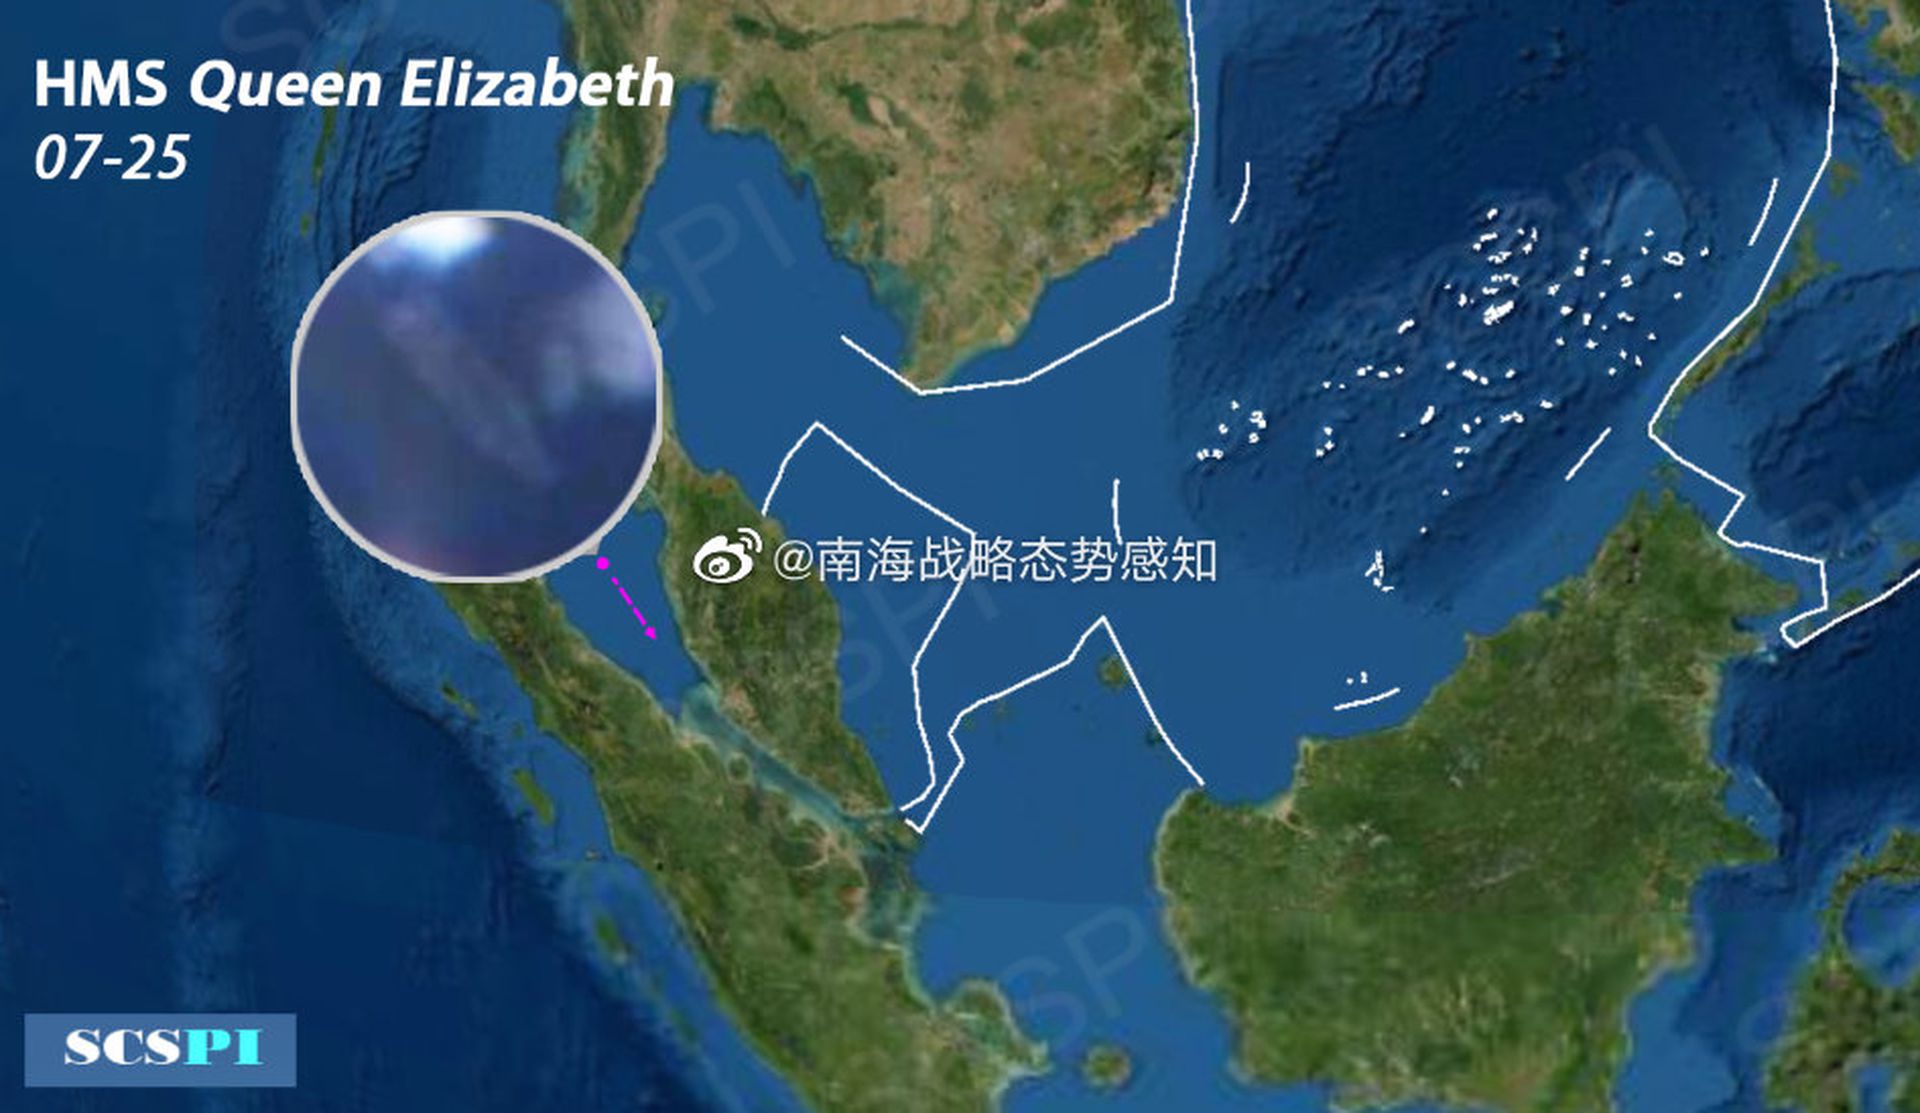 2021年7月25日，中国智库“南海战略态势感知”发布卫星在马六甲海峡捕获英国海军“伊丽莎白女王”号航母图像。（微博@南海战略态势感知）